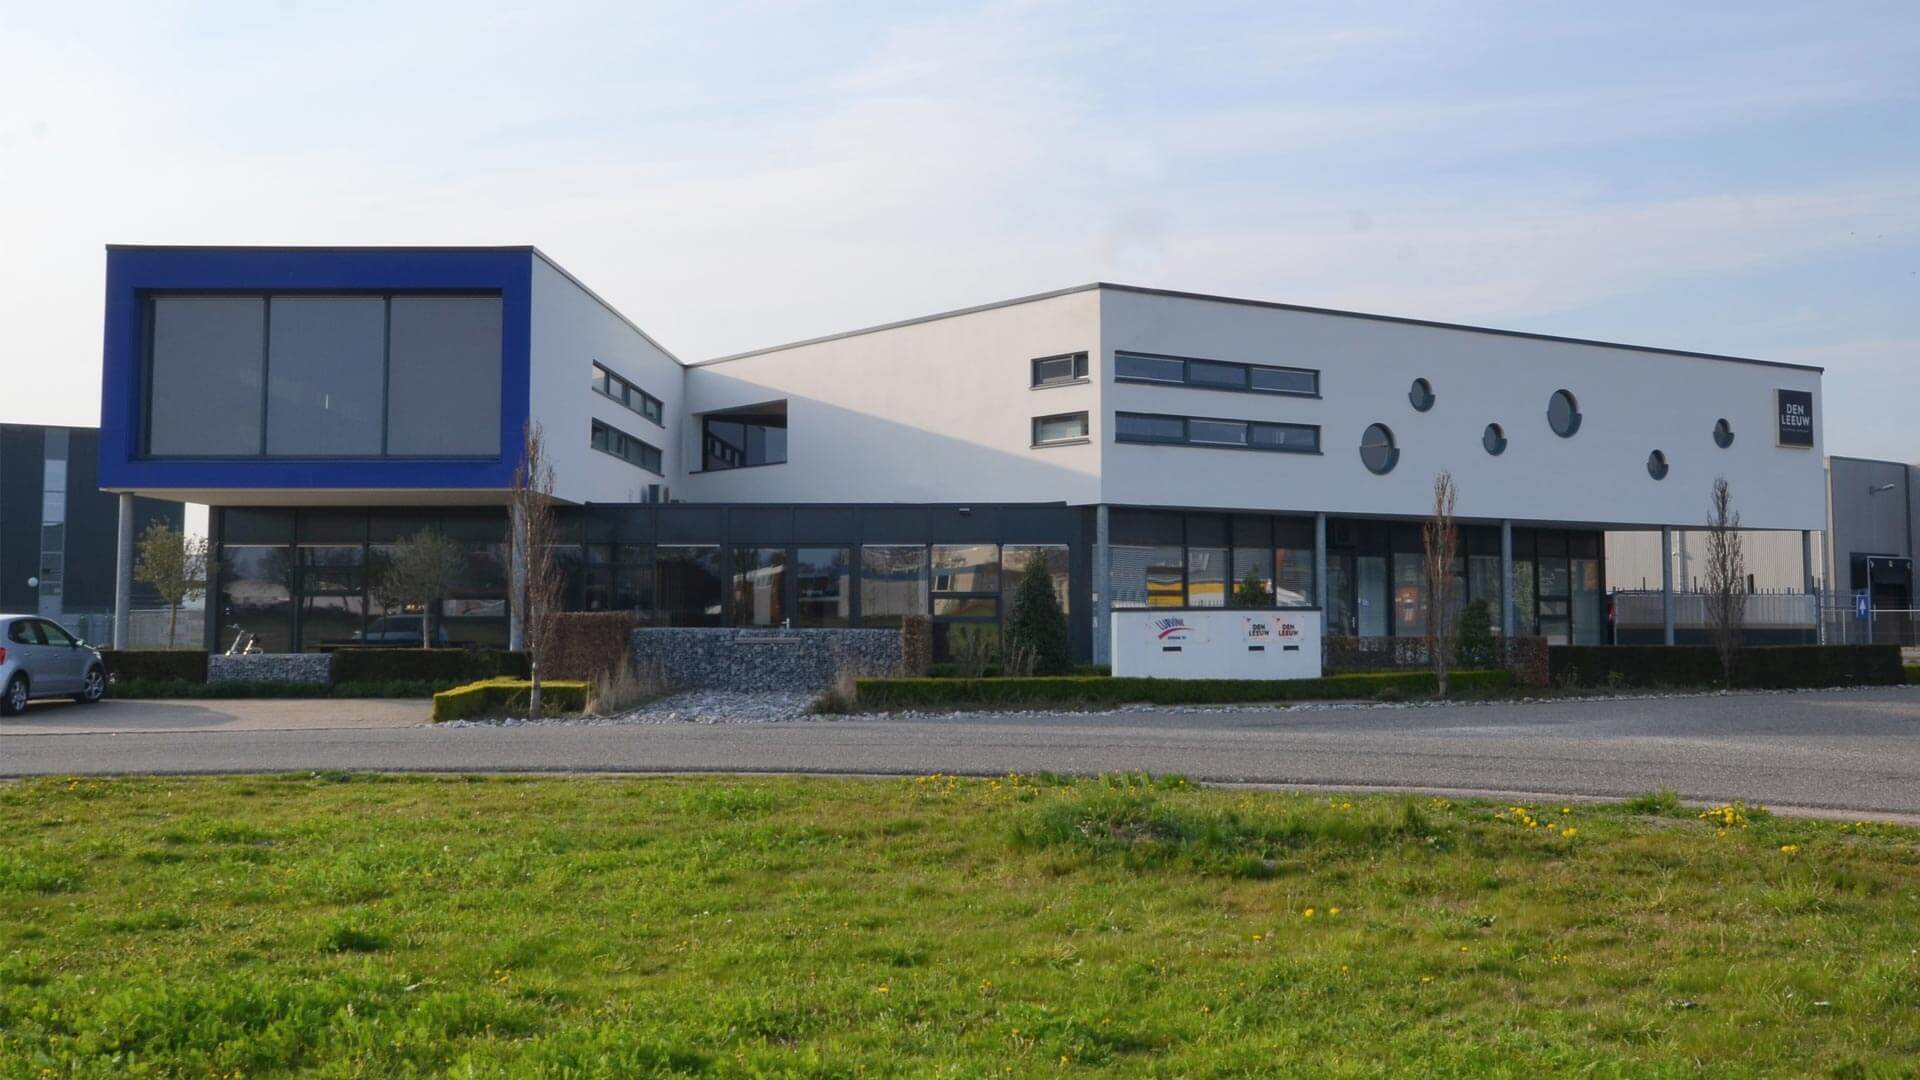 Bedrijfshal, kantoren en showrooms in Lichtenvoorde